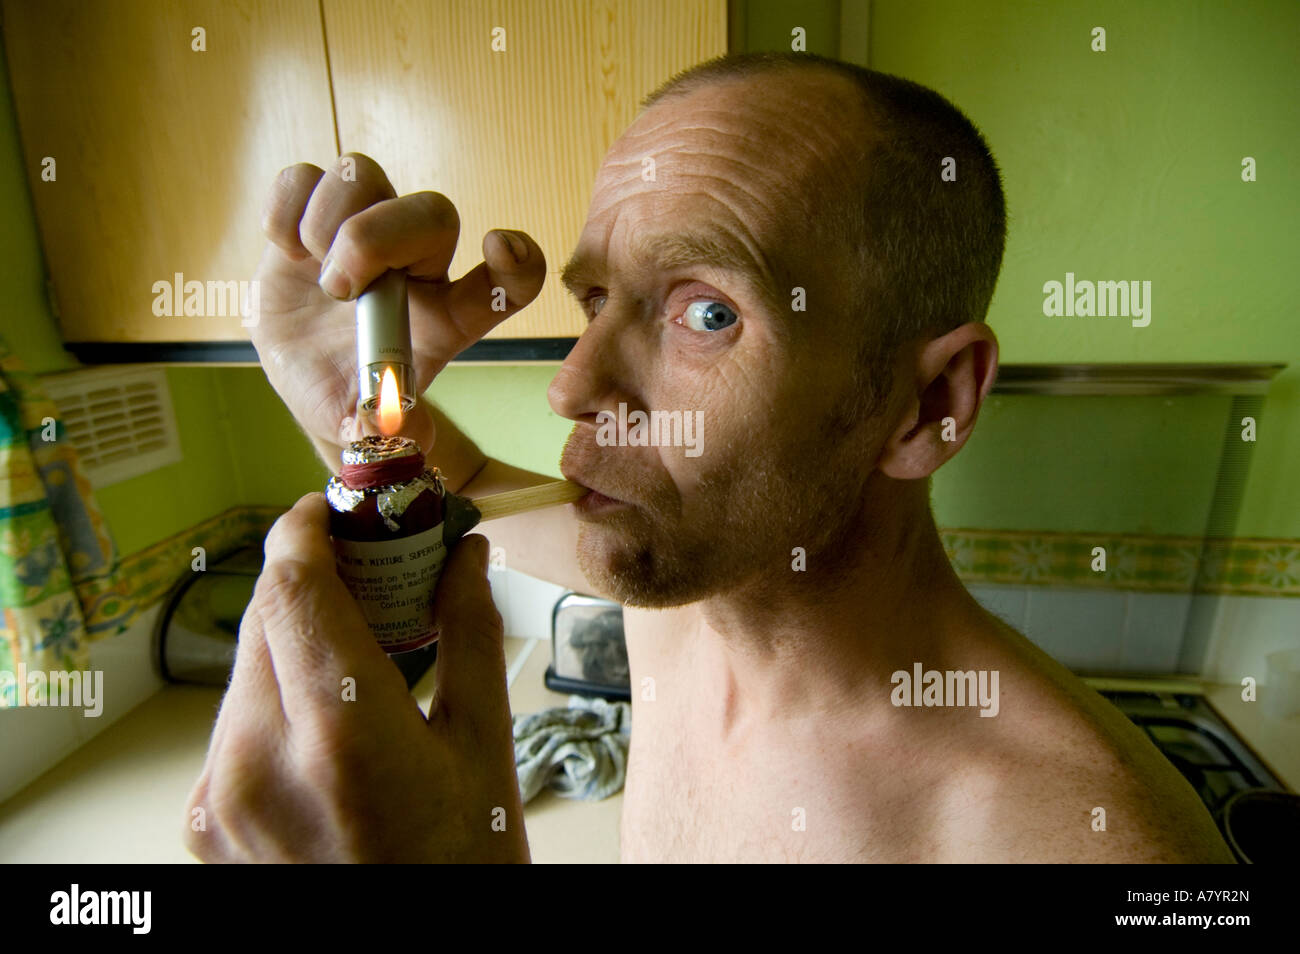 Man Smoking Crack Cocaine Sheffield UK Stock Photo